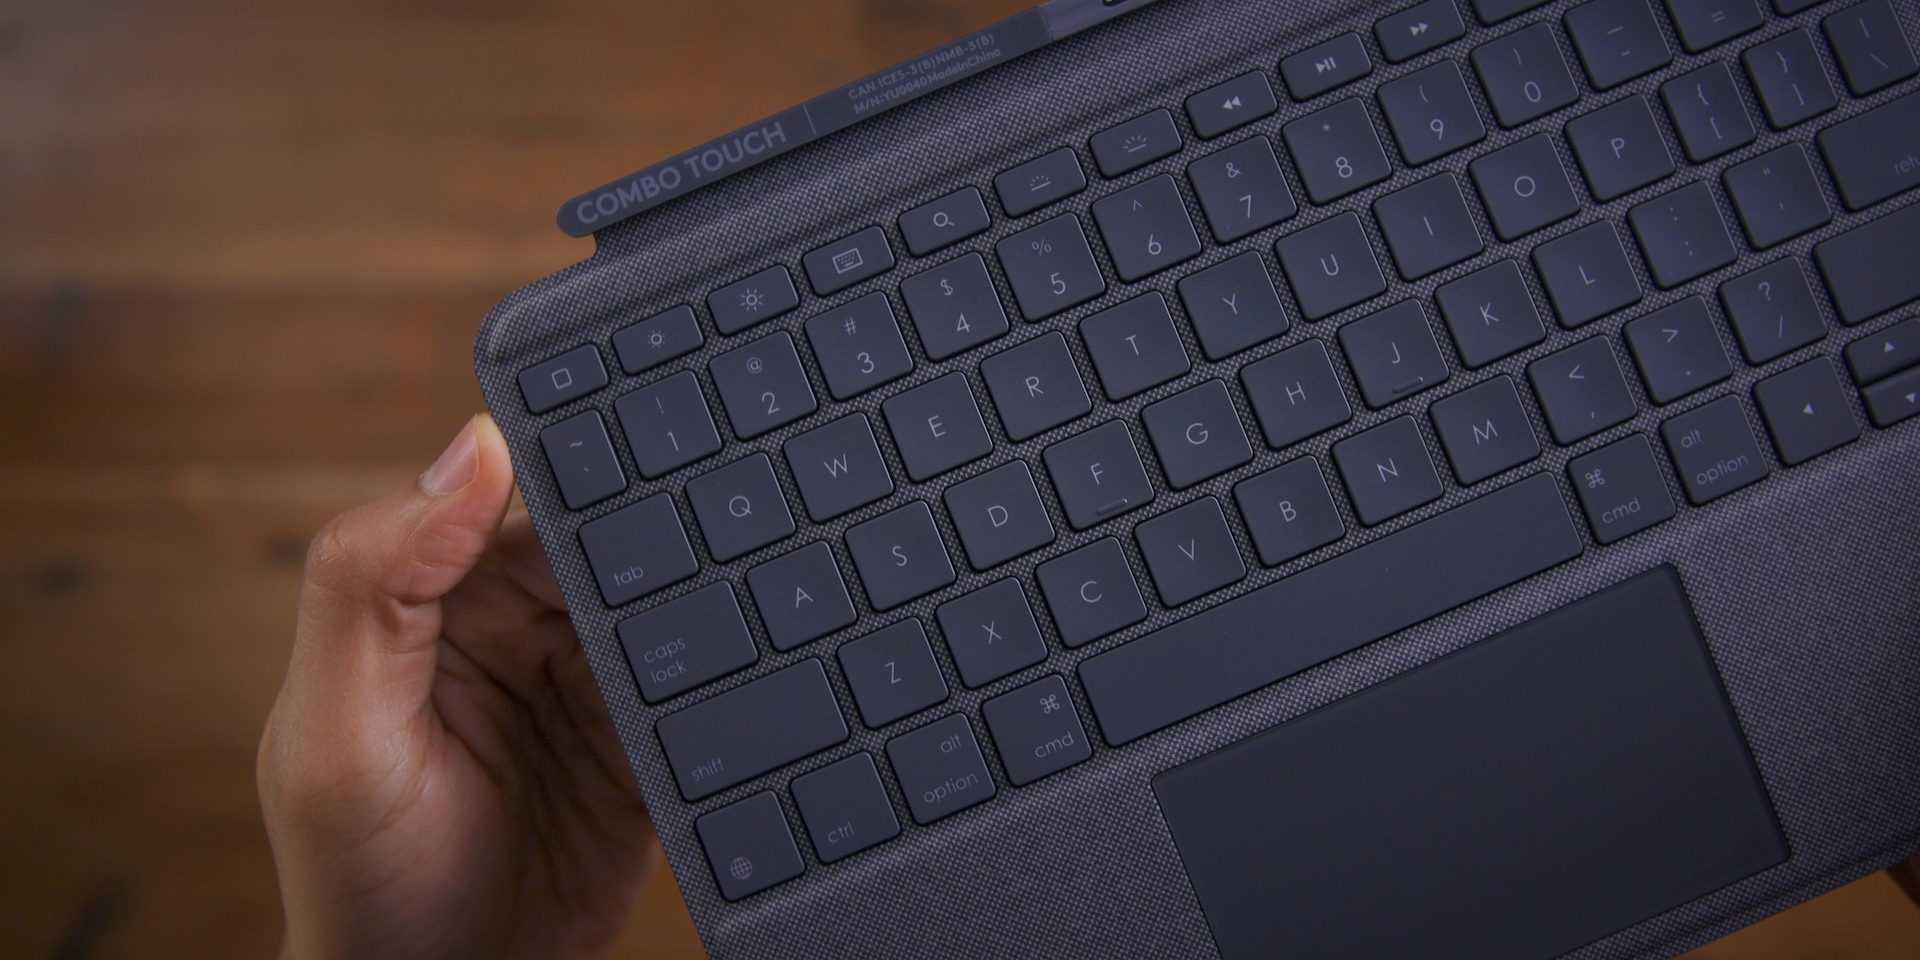 Logitech tablet keyboard for ipad black bluetooth купить по акционной цене , отзывы и обзоры.